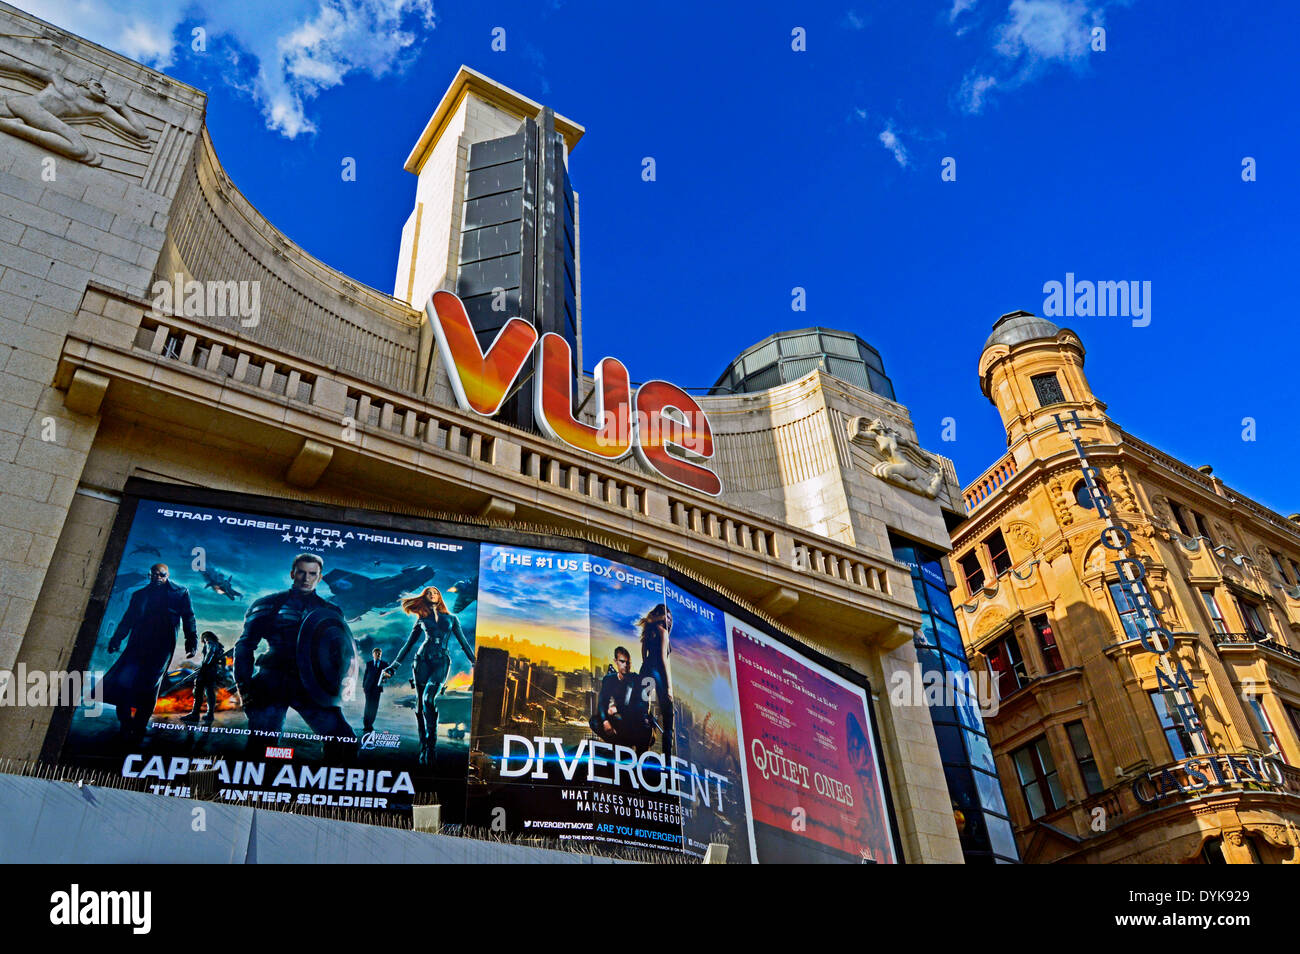 VUE Cinema, Leicester Square, nel West End di Londra, Inghilterra, Regno Unito Foto Stock